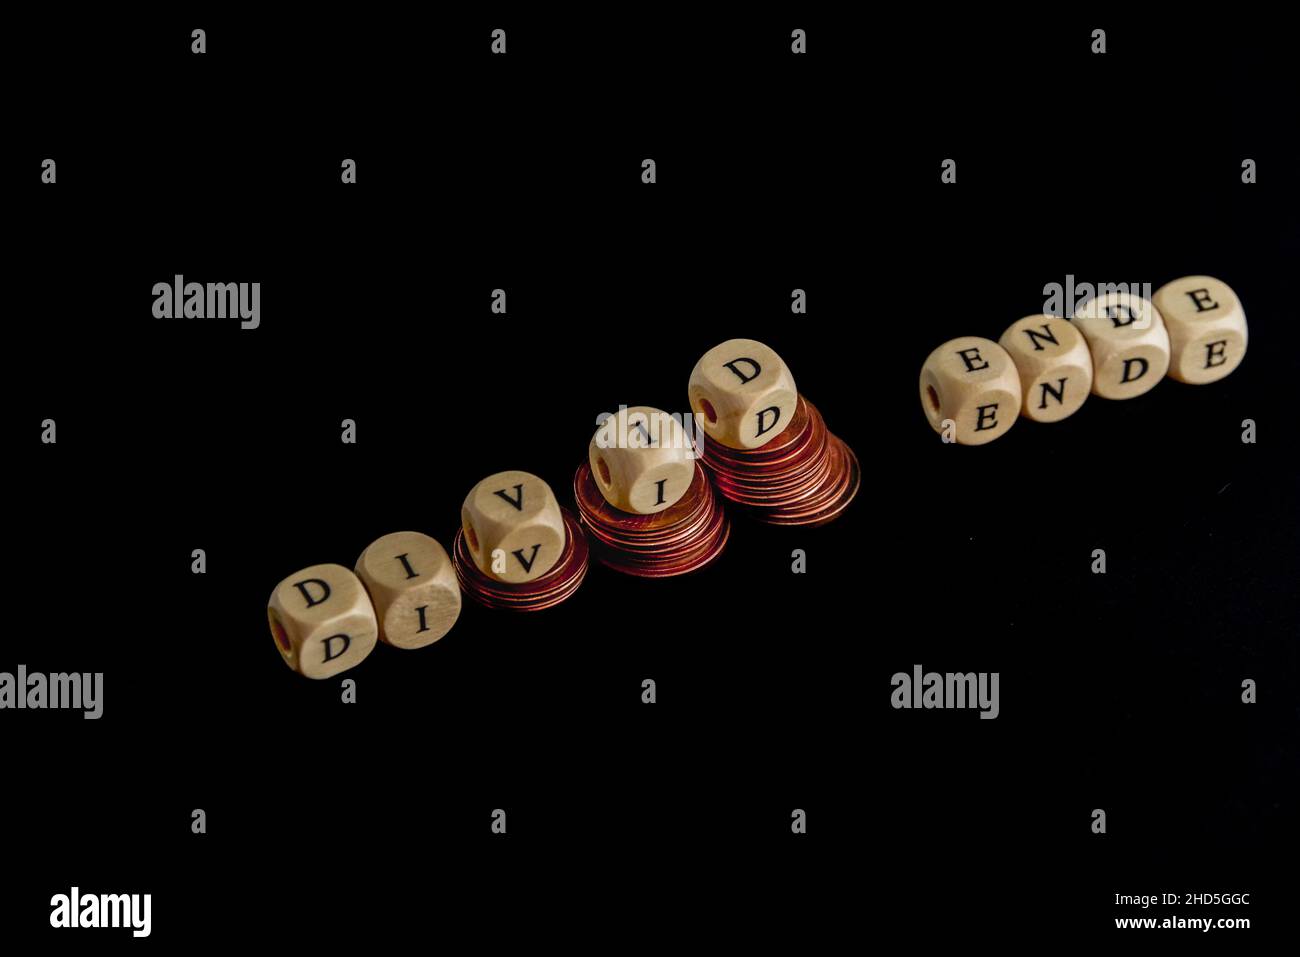 Punti metallici di monete con lettere a cubetti di legno che formano la parola 'Divid Ende' in lingua tedesca, immagine concettuale per la fine del dividendo. Foto Stock